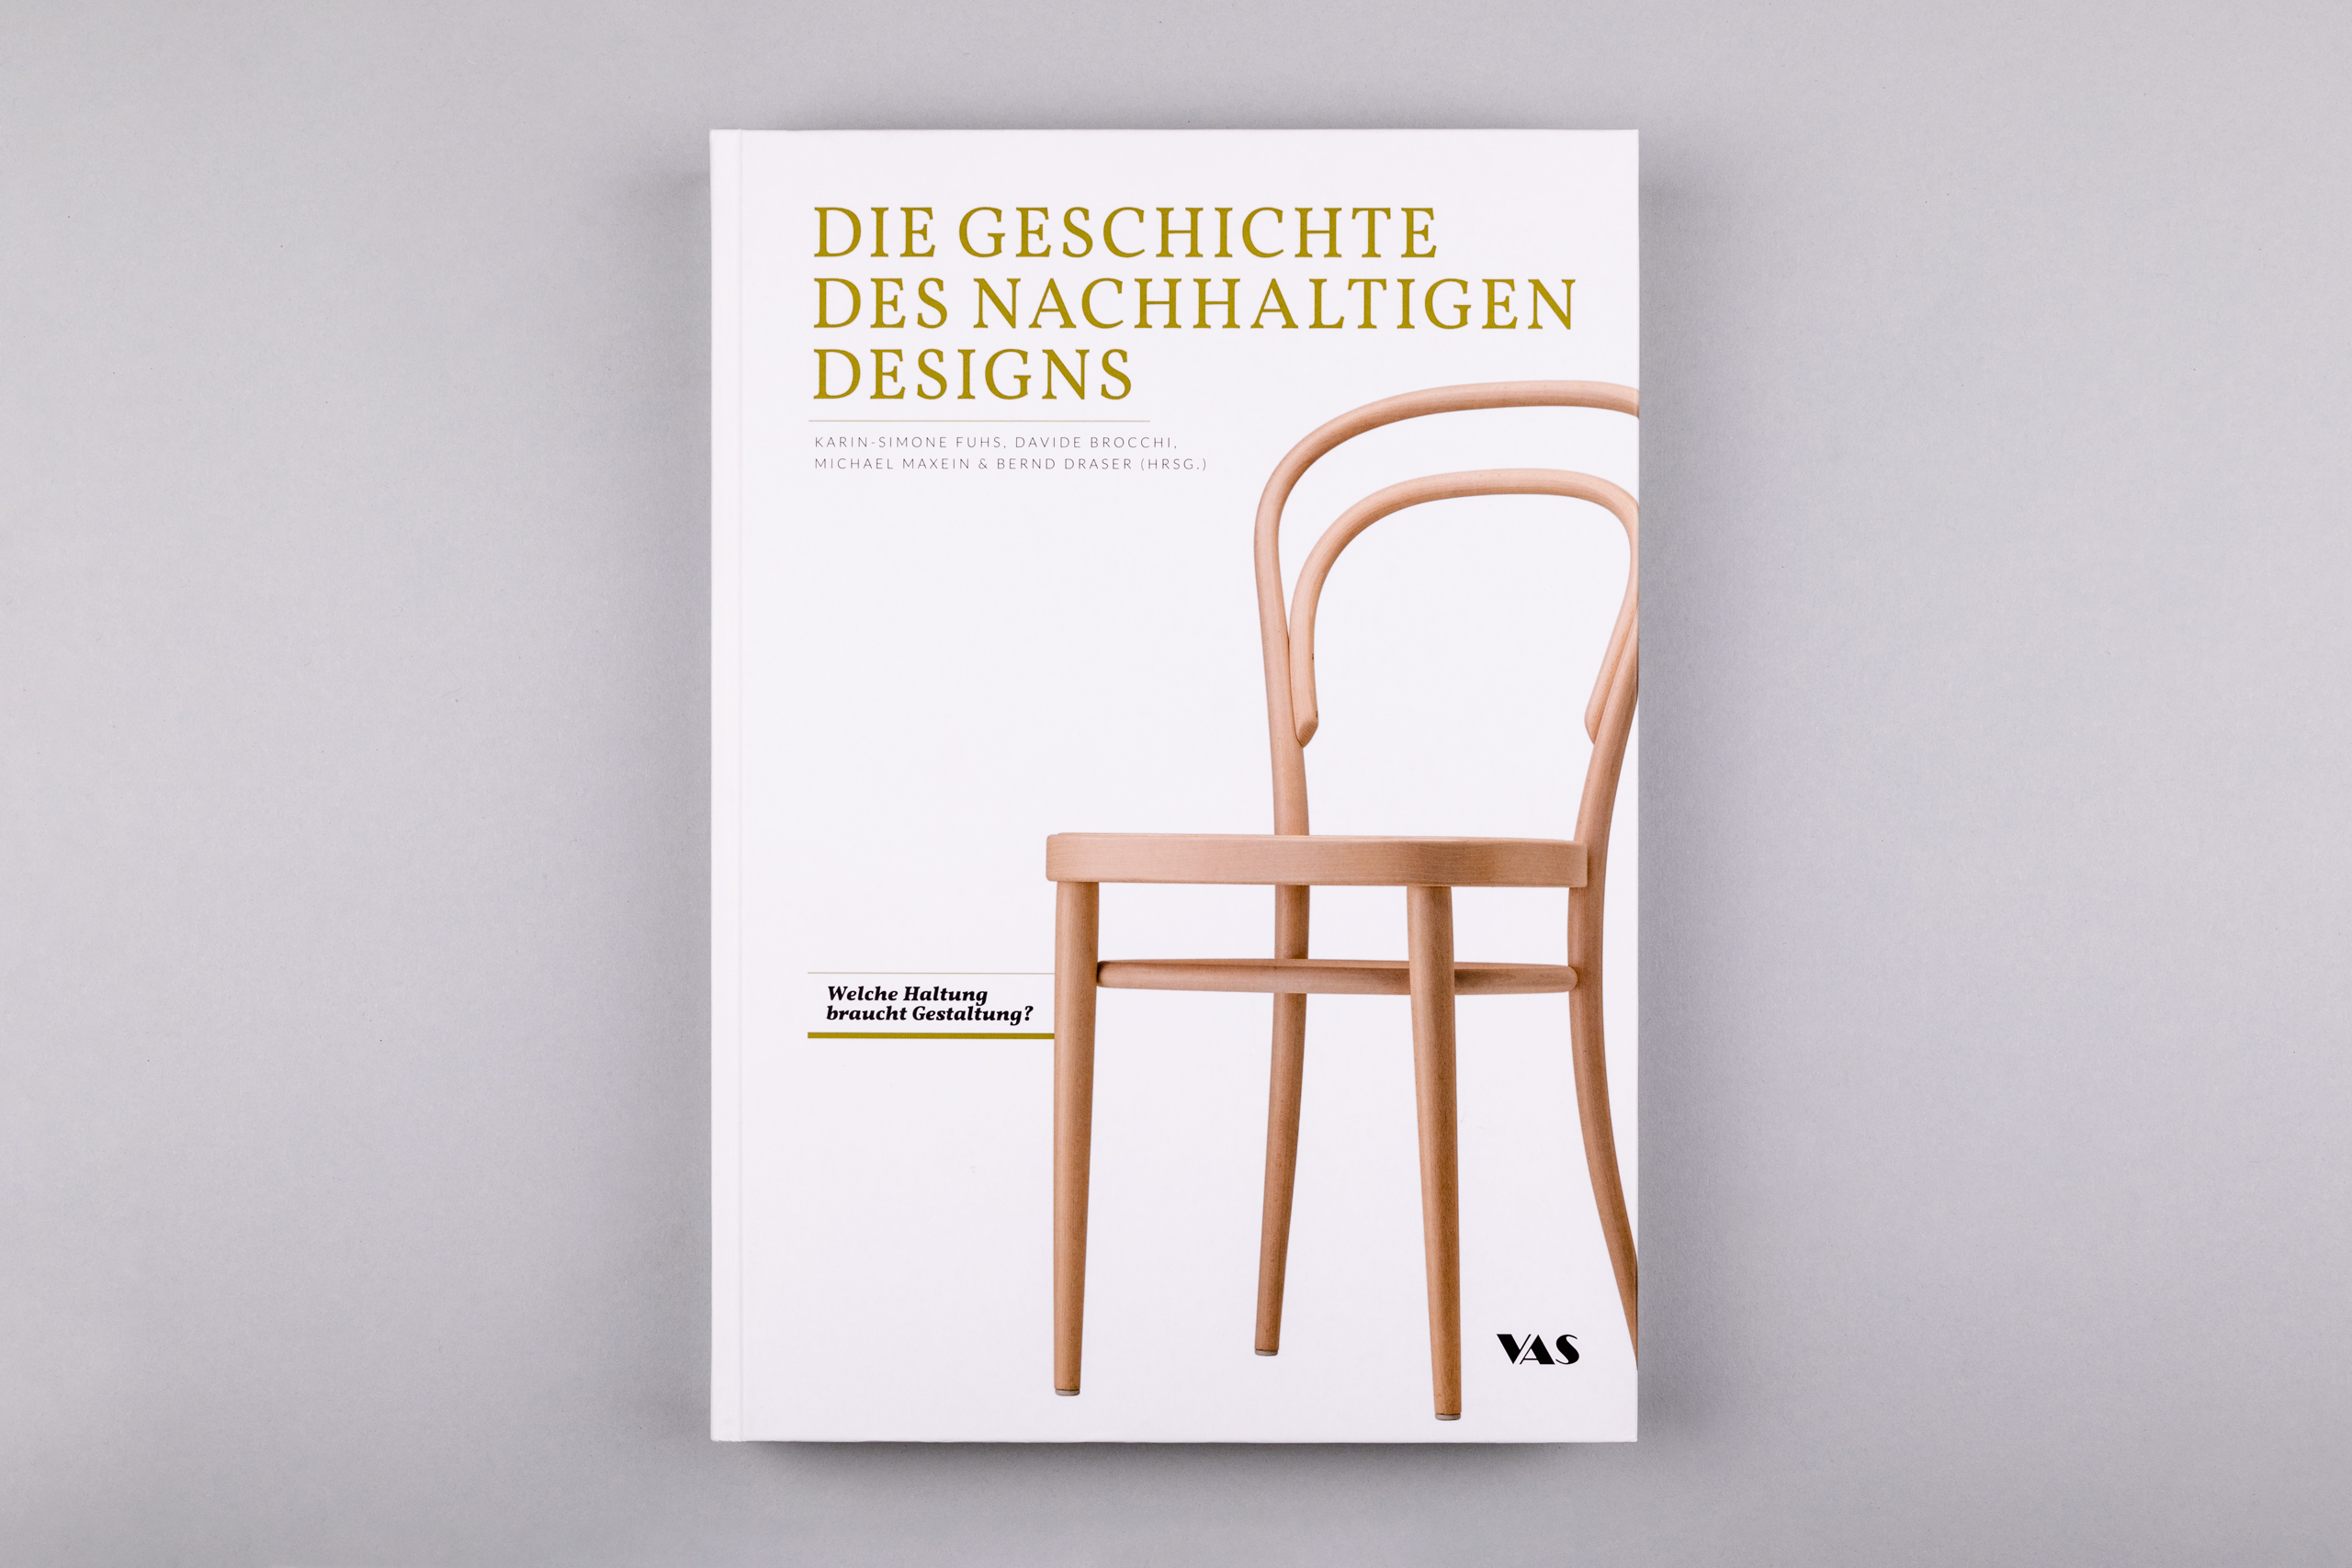 Büro Gestalten: Die Geschichte de nachhaltigen Designs (Buch, Titel)